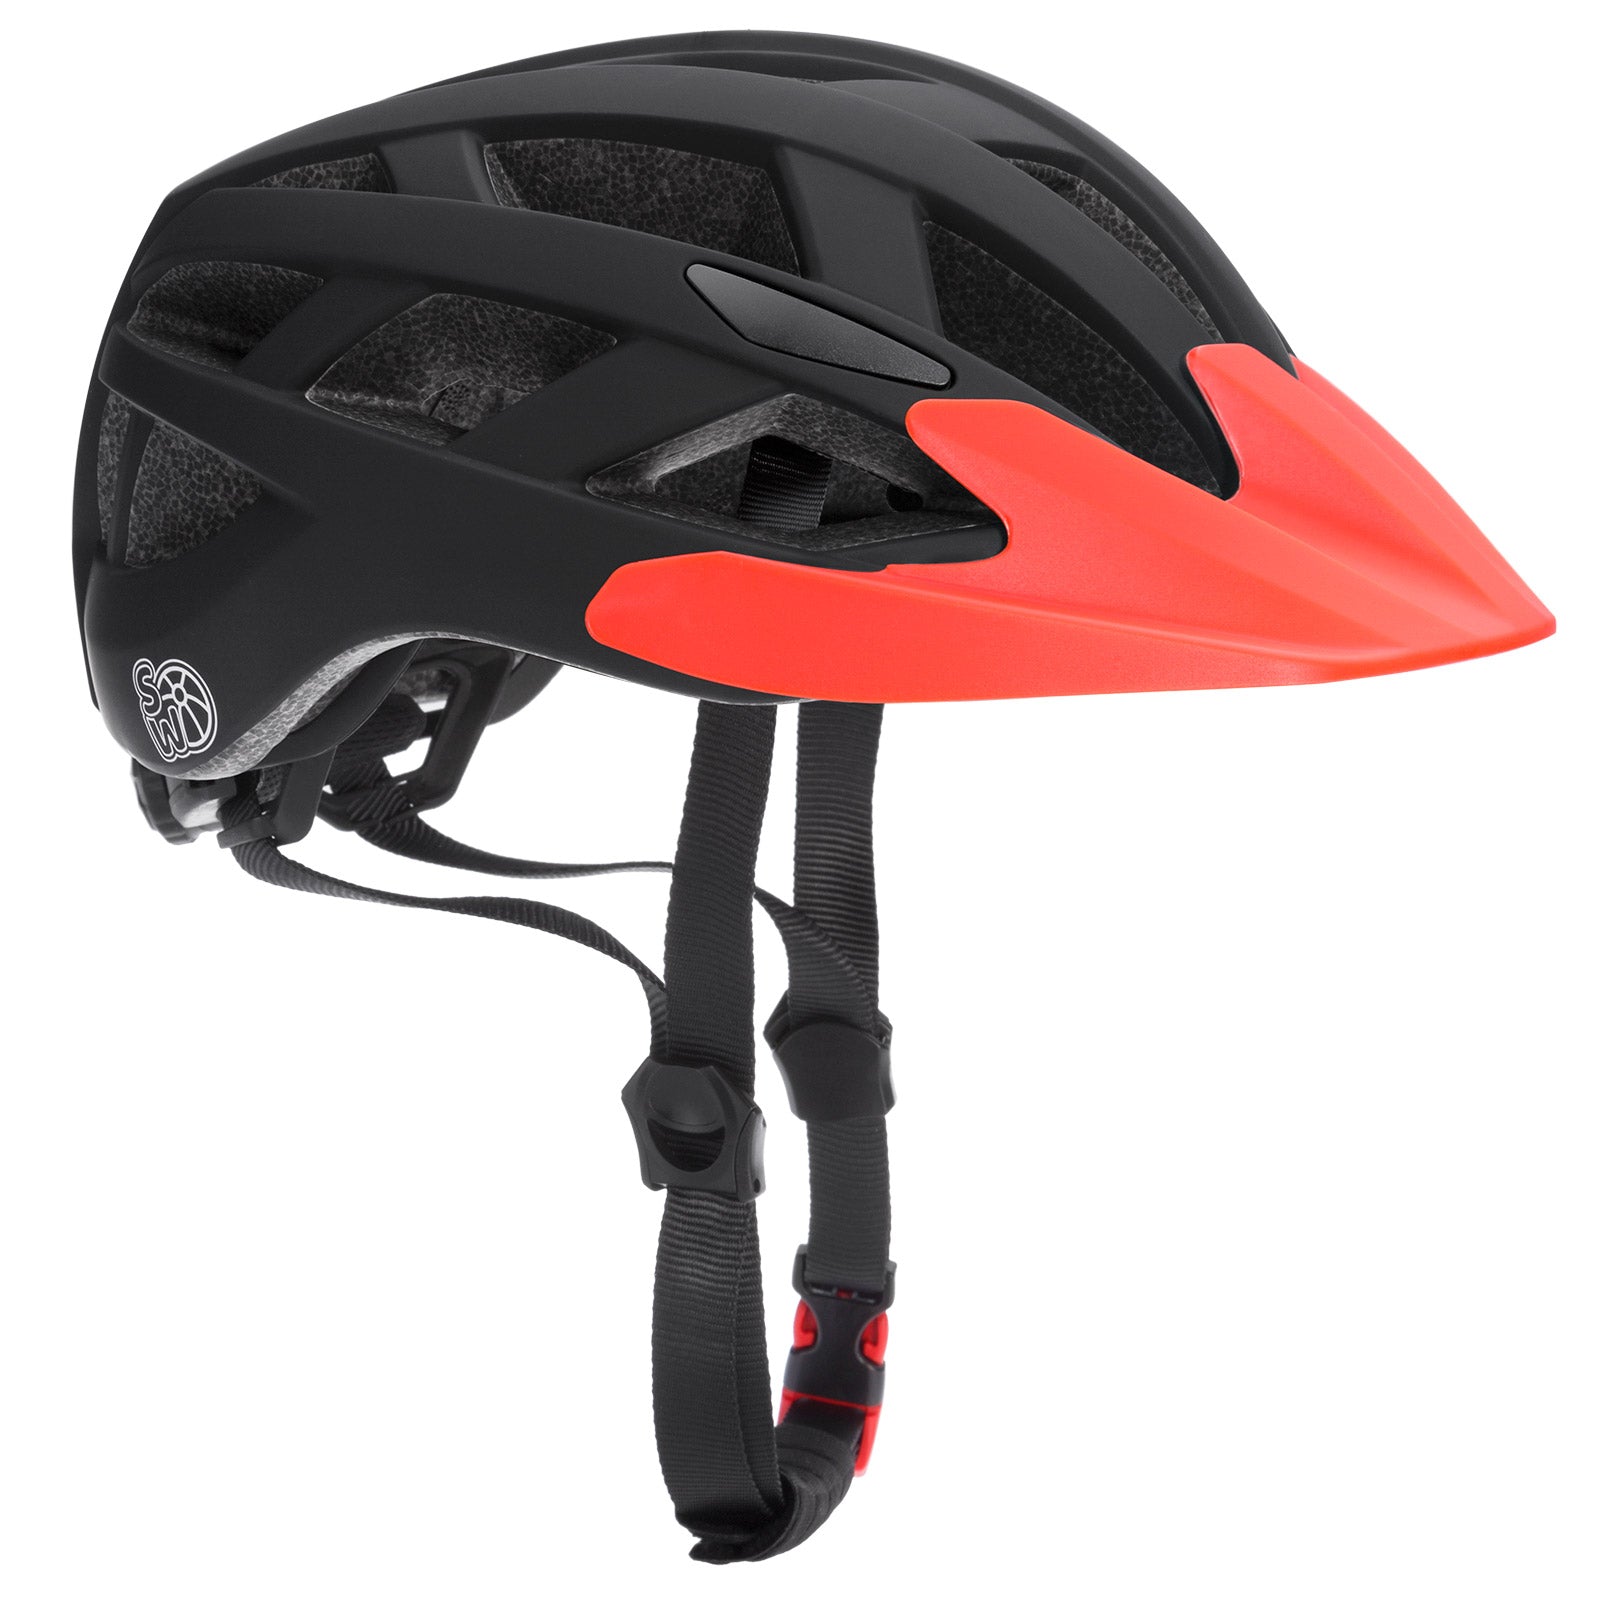 Cykelhjelm til børn S-M LED justerbar 50-57cm visir 3-13 år BMX Mountainbike CE-certificeret, farve/størrelse: sort-orange S